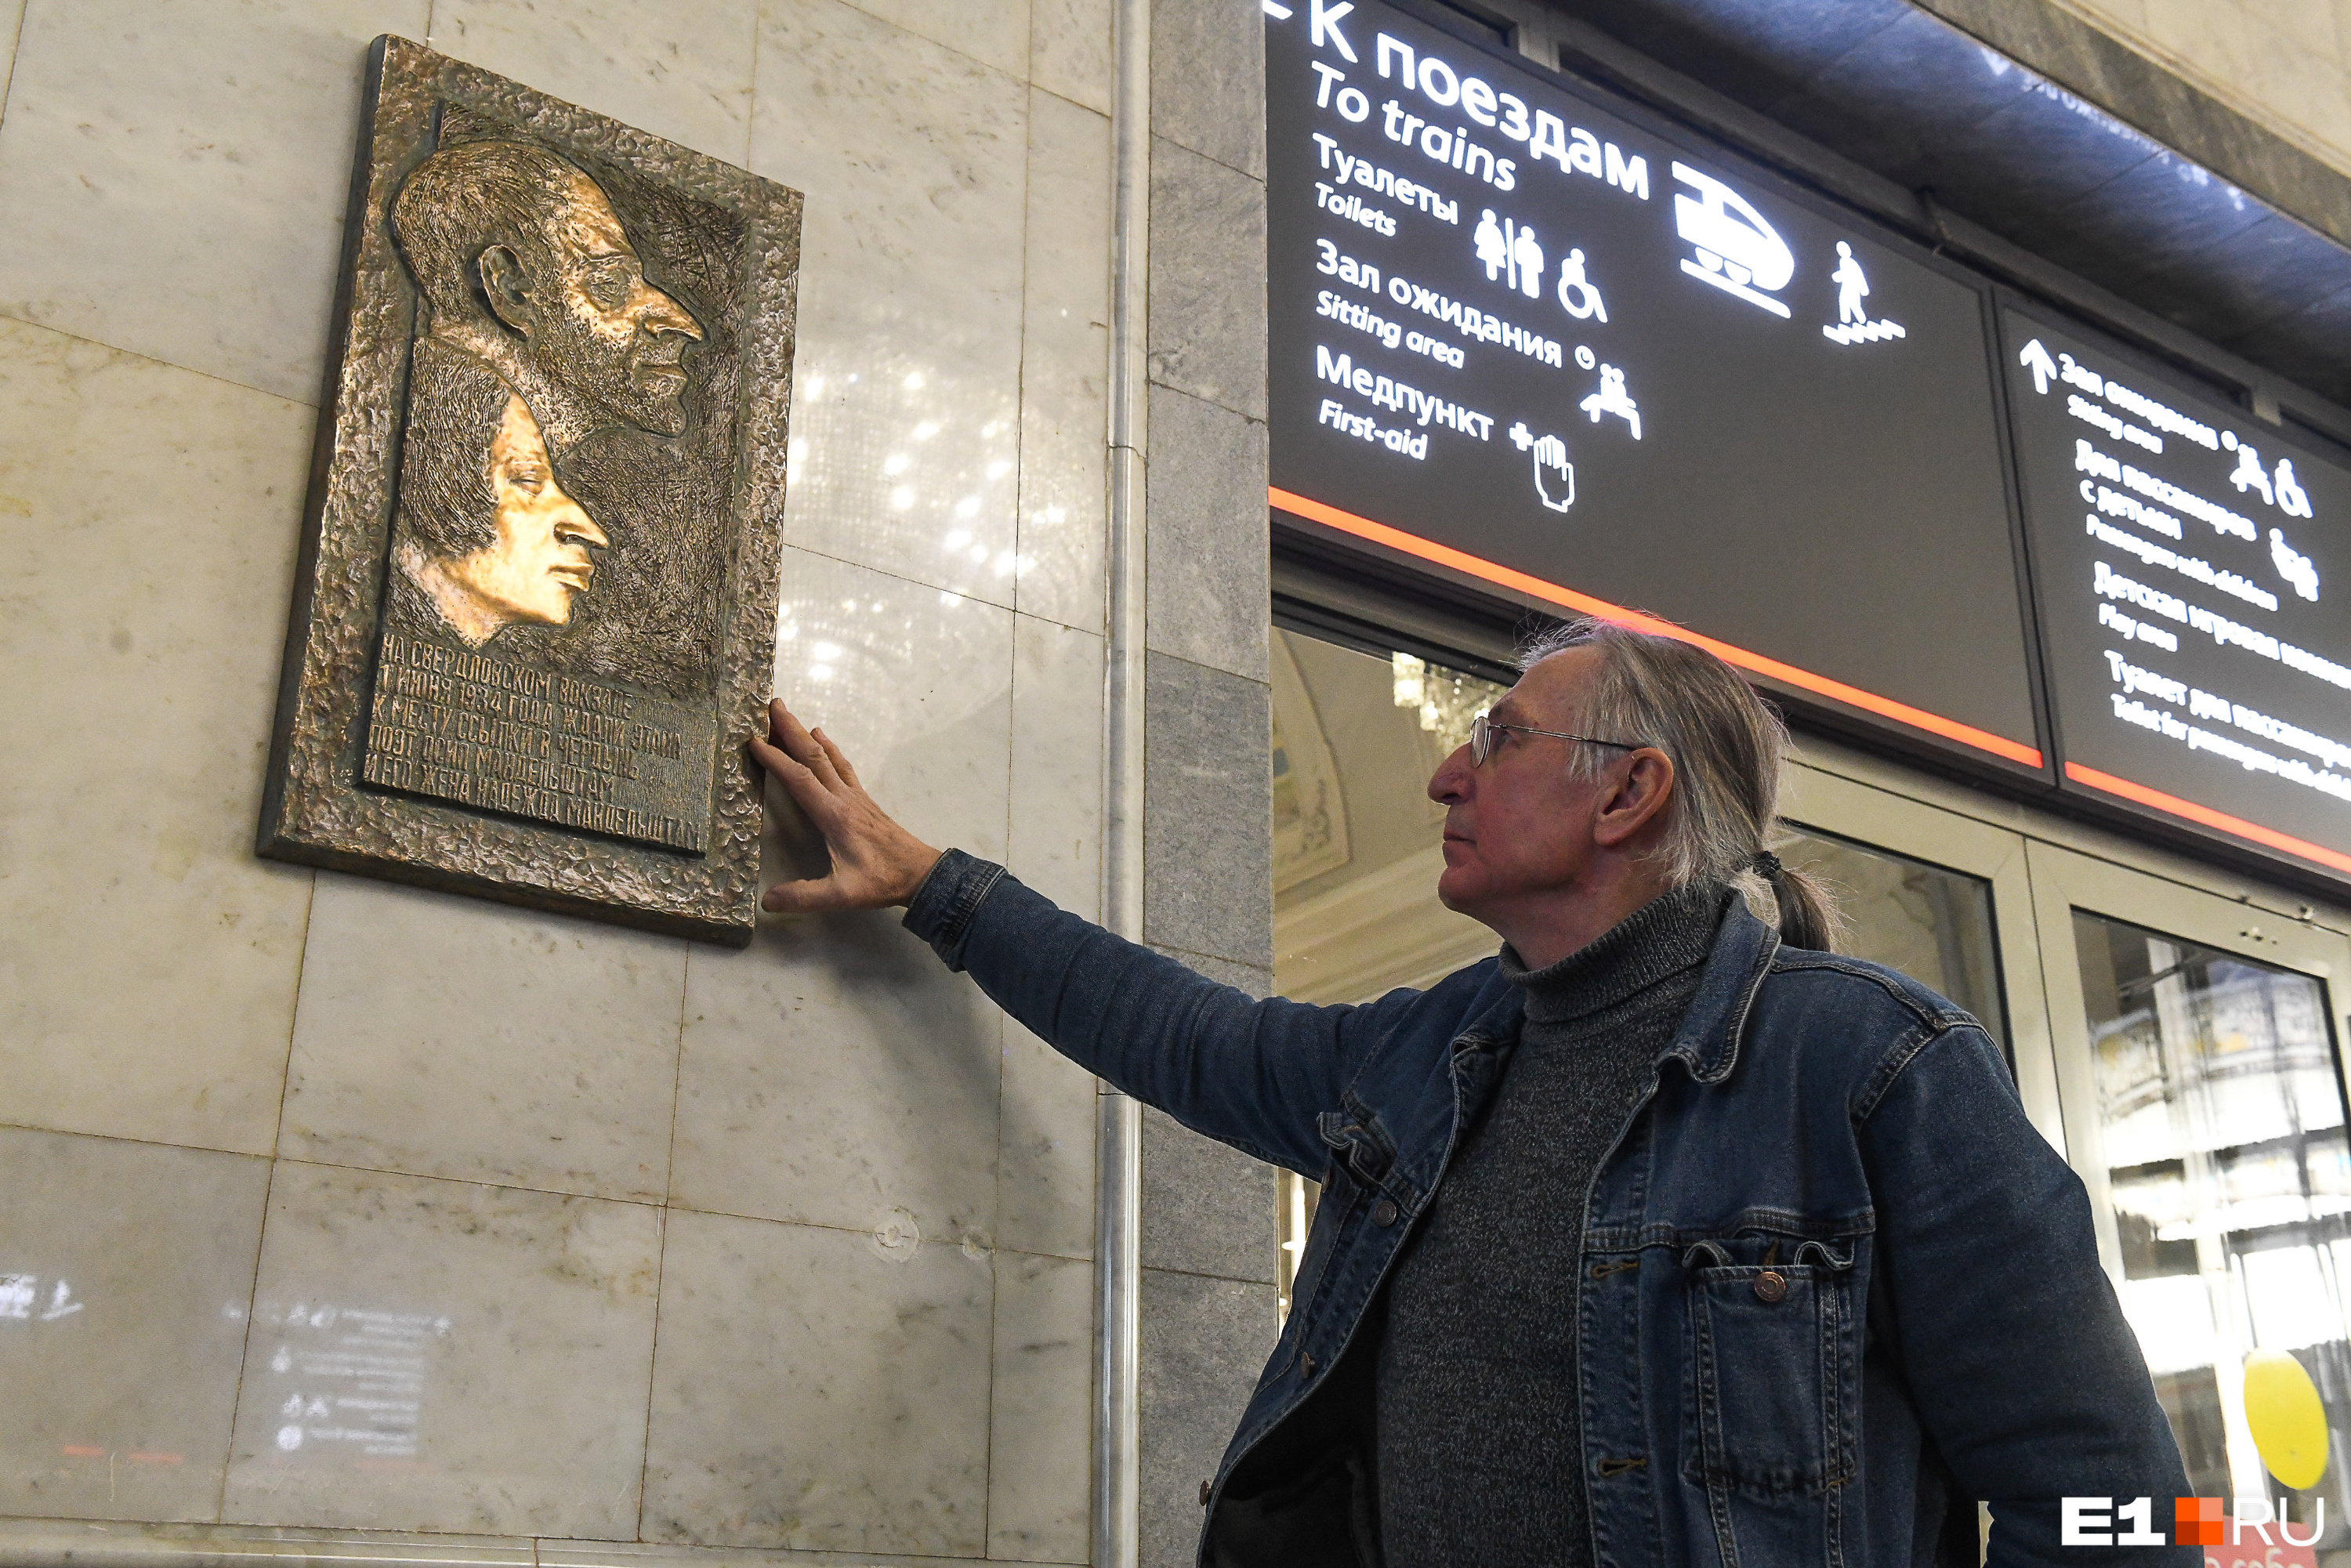 Скульптор считает, что в Екатеринбурге должно появляться больше культурных мест 